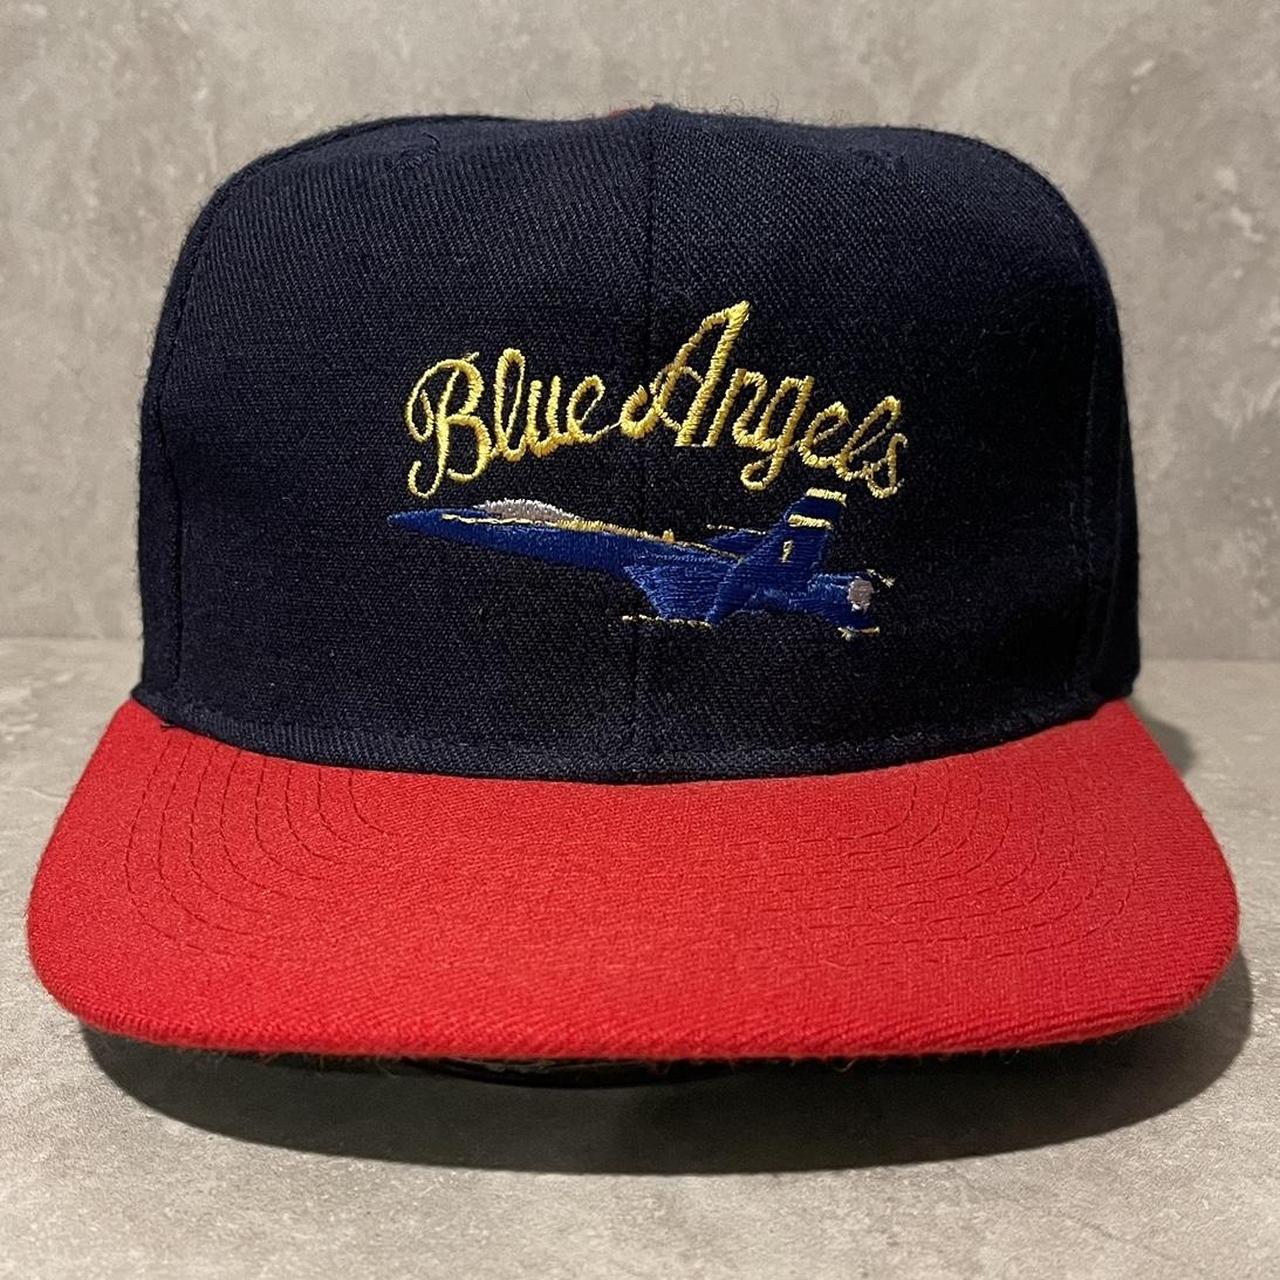 Vintage Men's Caps - Navy